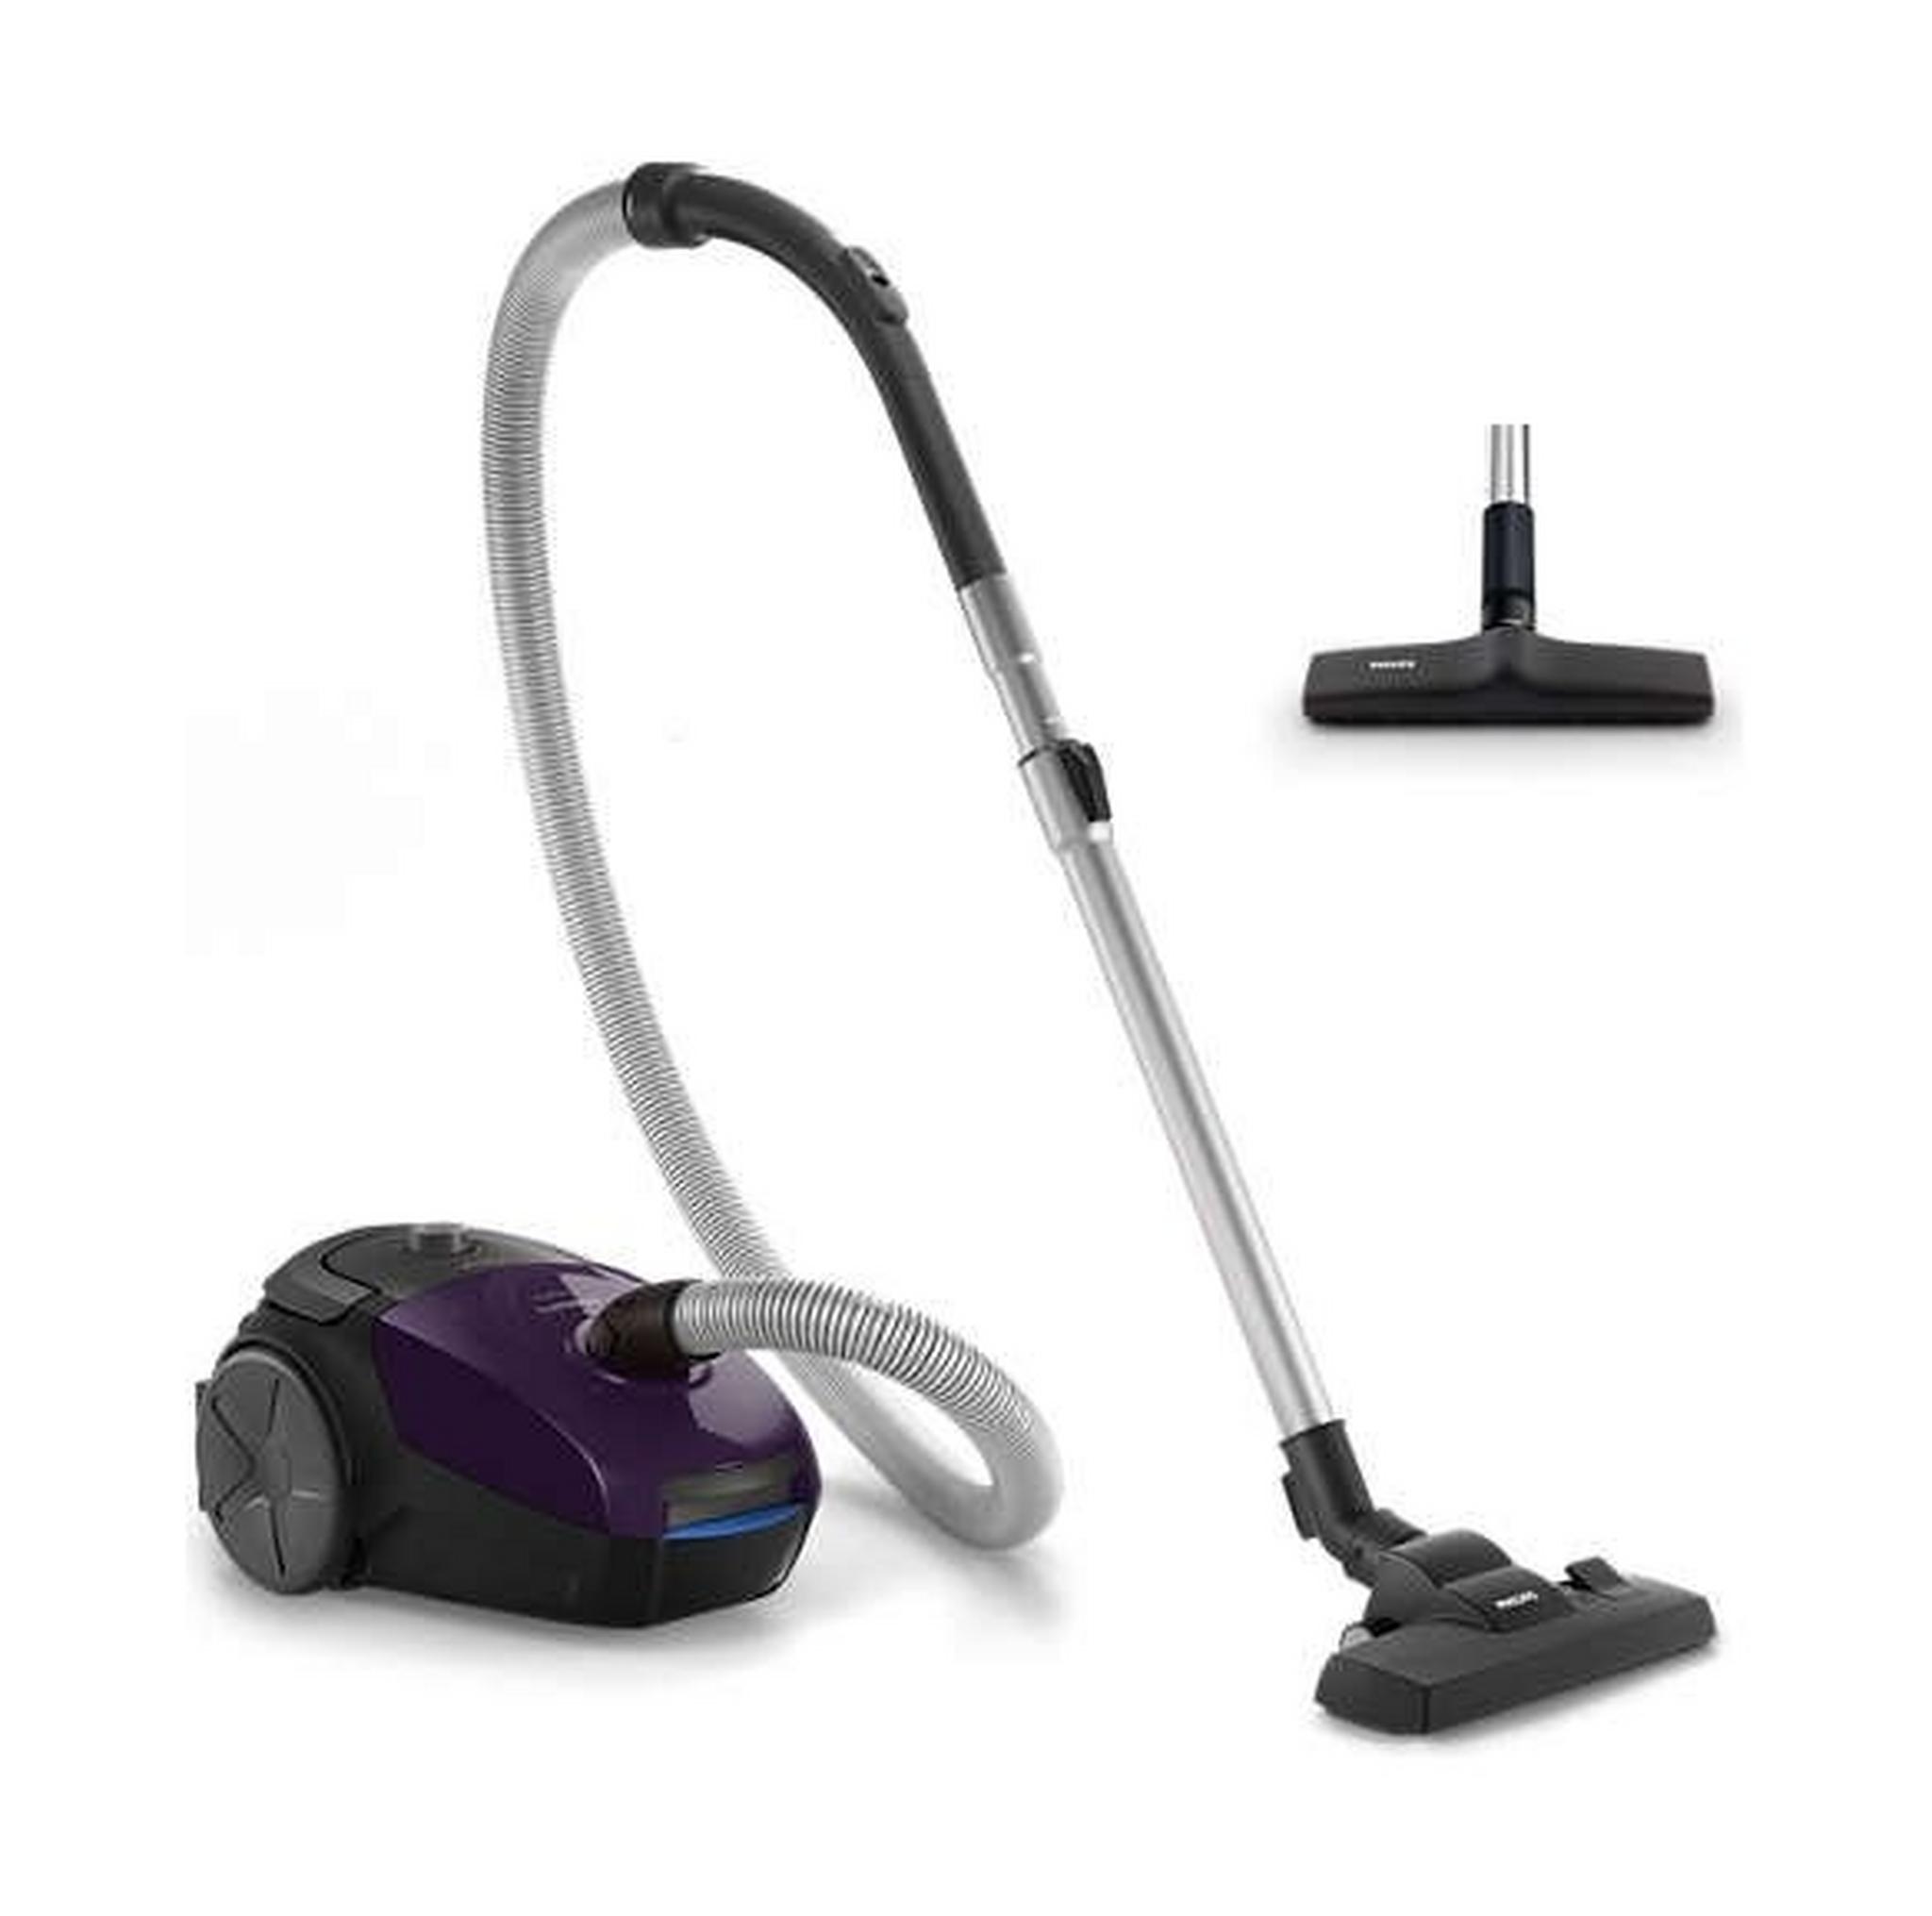 Philips PowerGo 2000W Bag Vacuum Cleaner (FC8295) - Violet